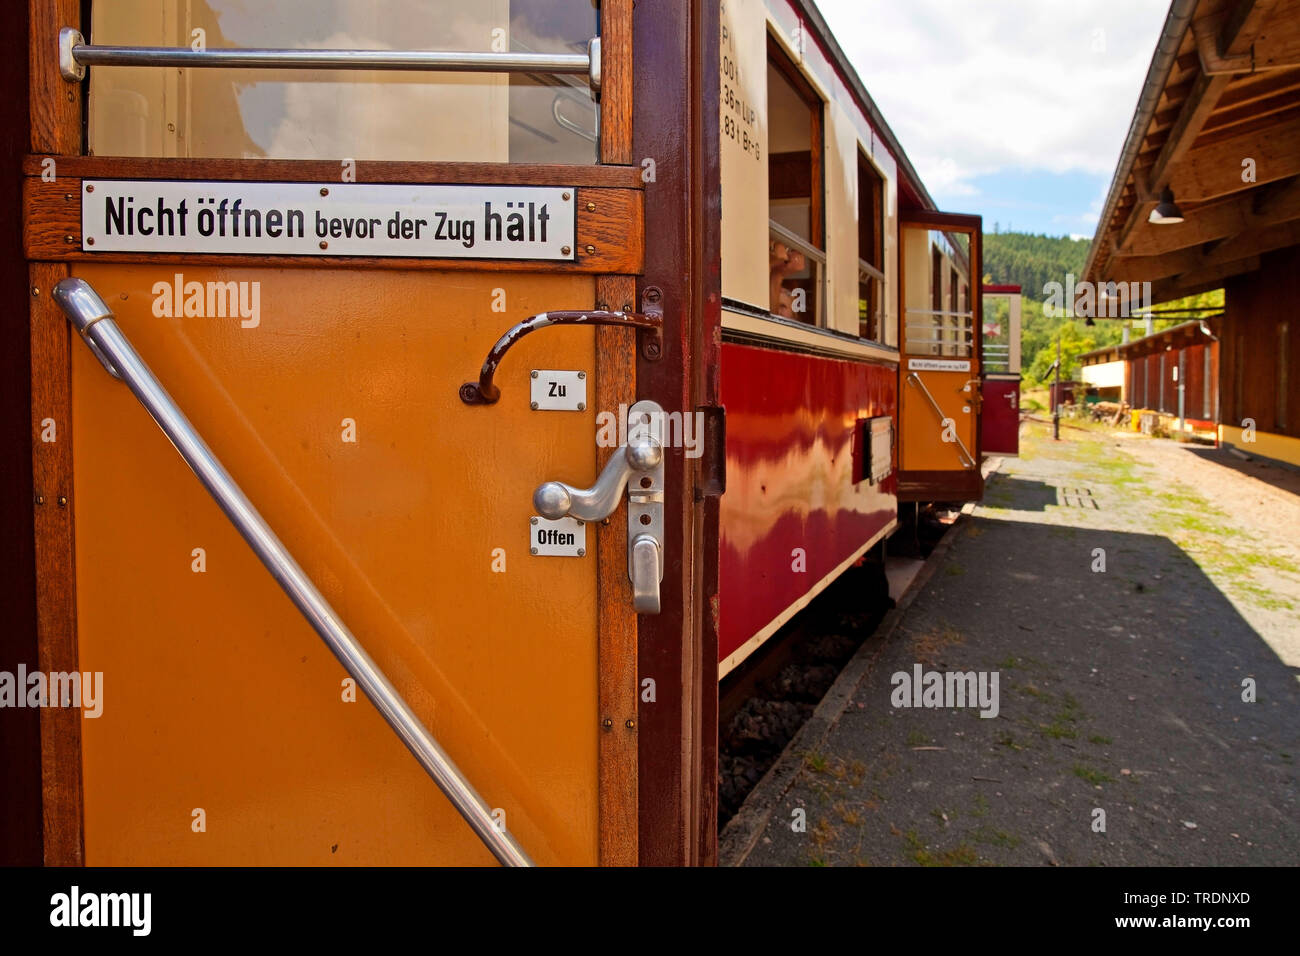 Porta del treno immagini e fotografie stock ad alta risoluzione - Alamy